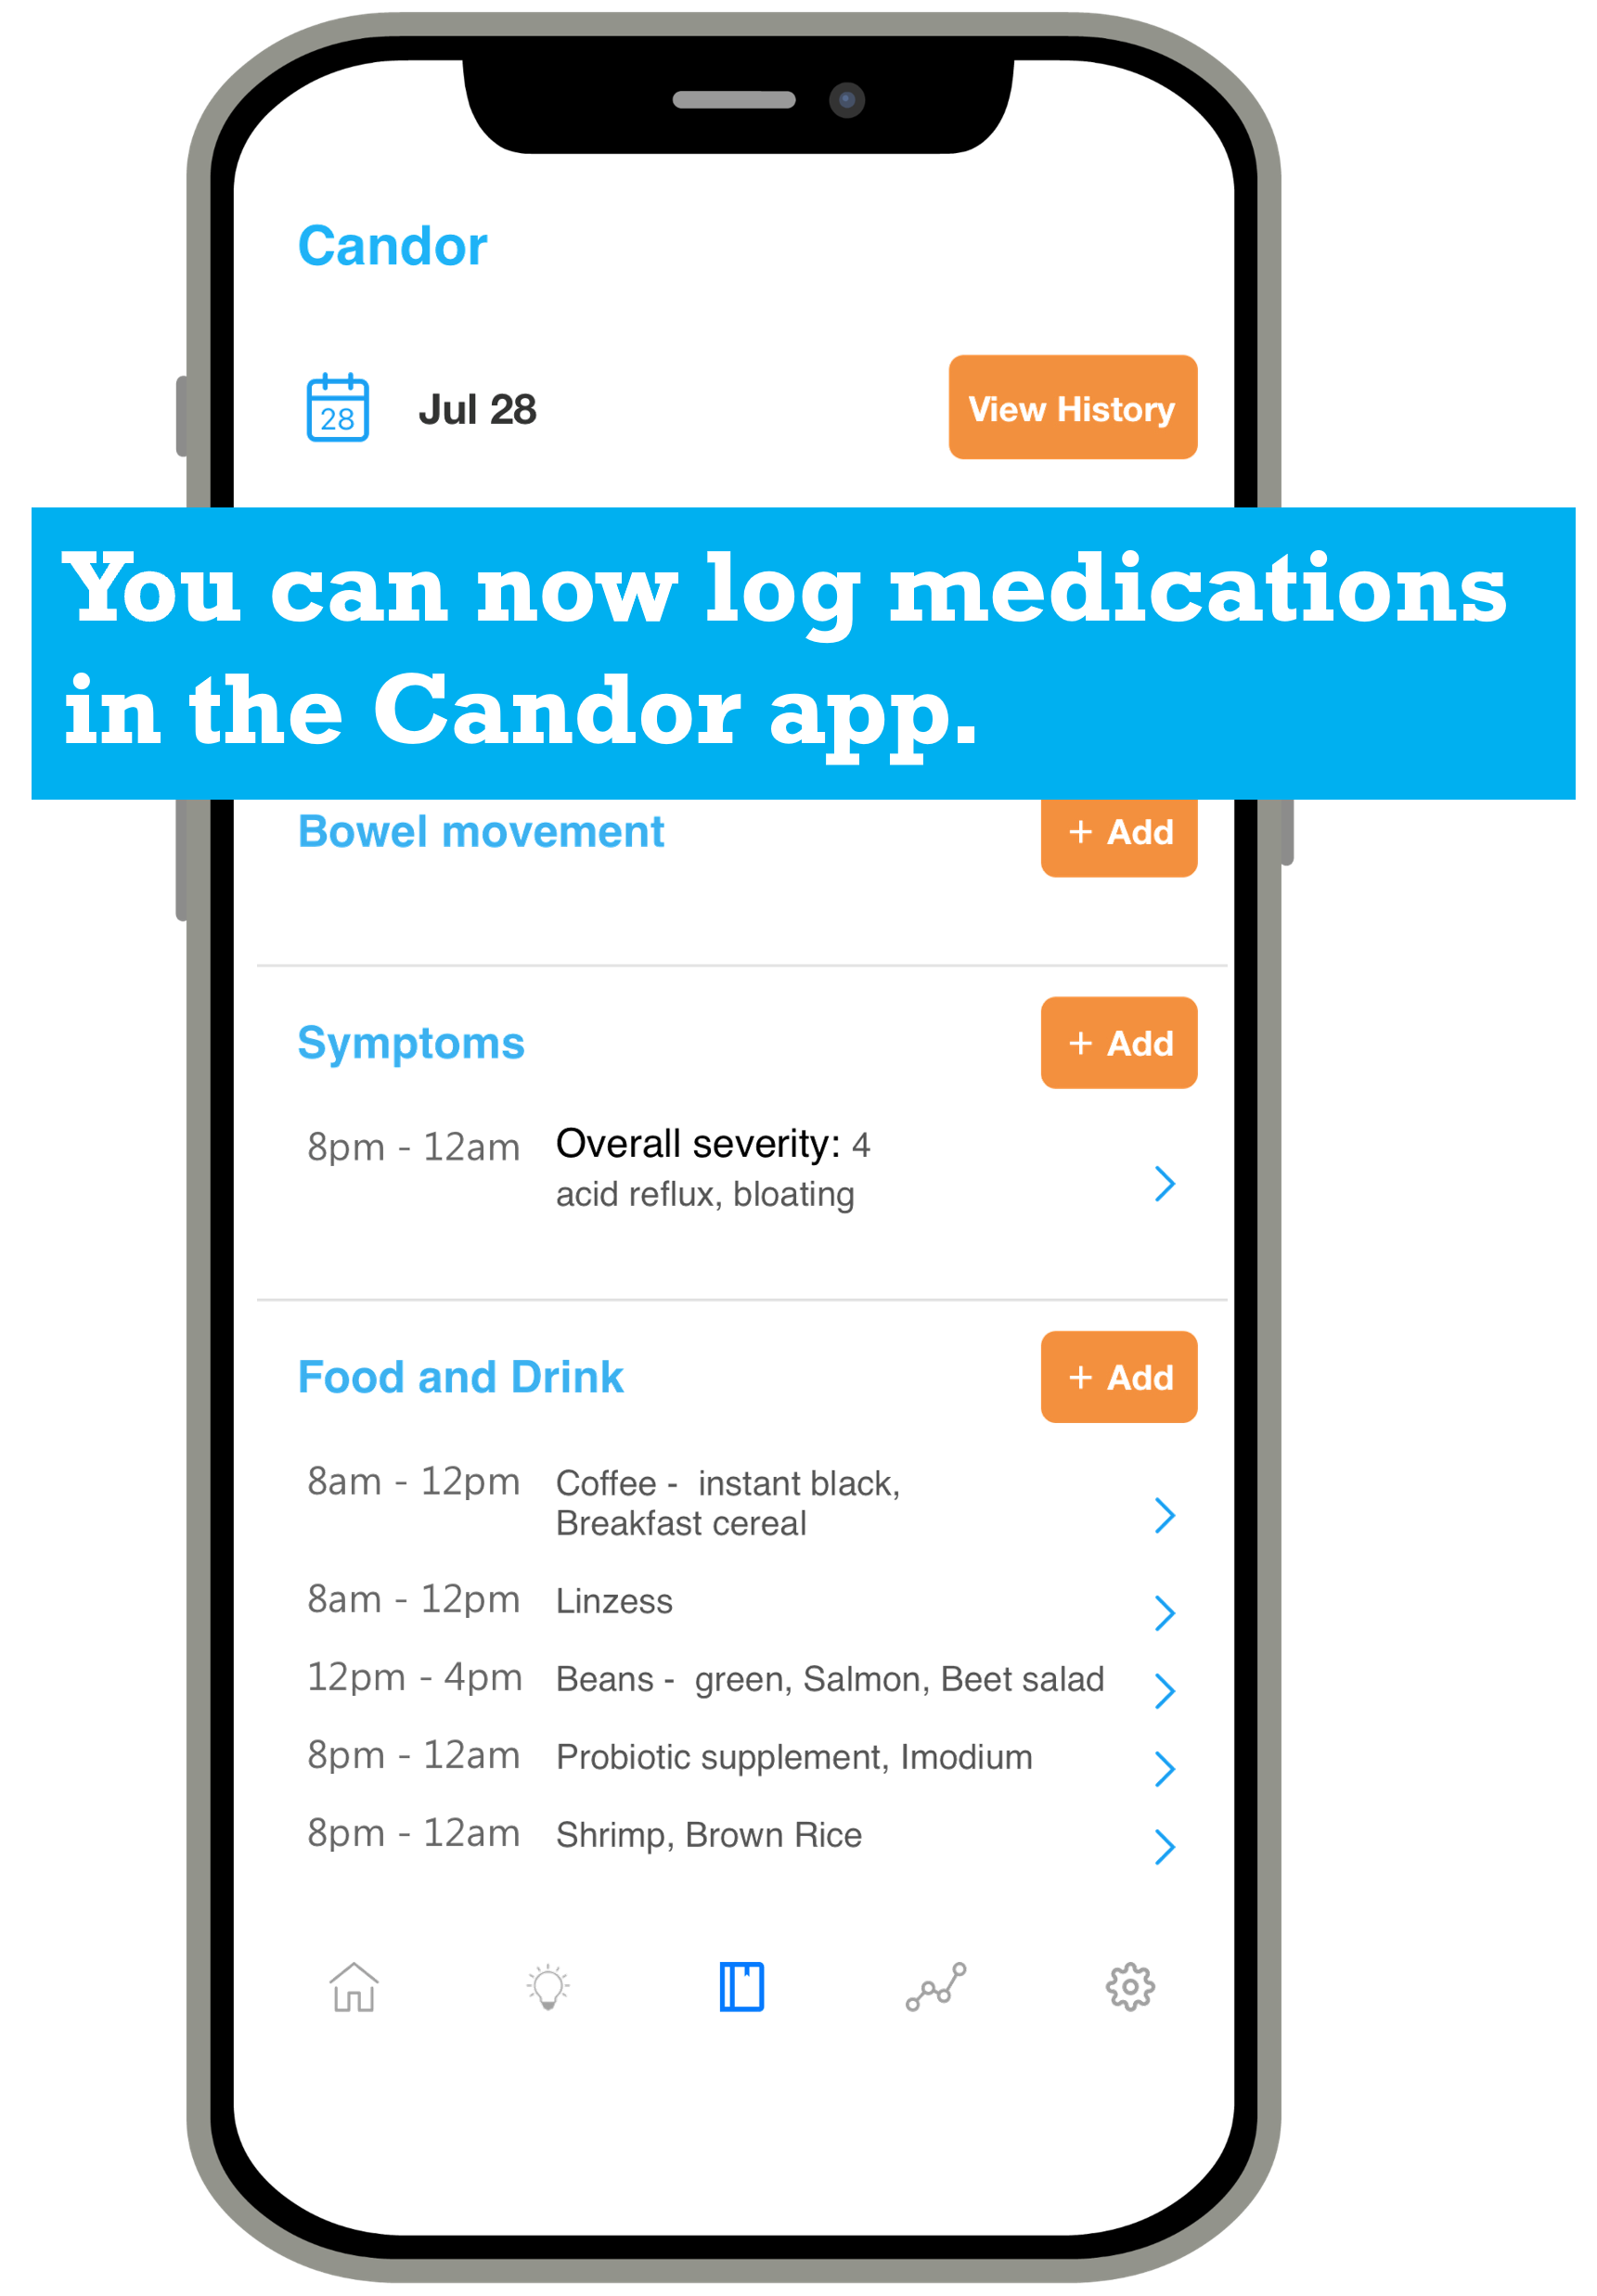 candor app log